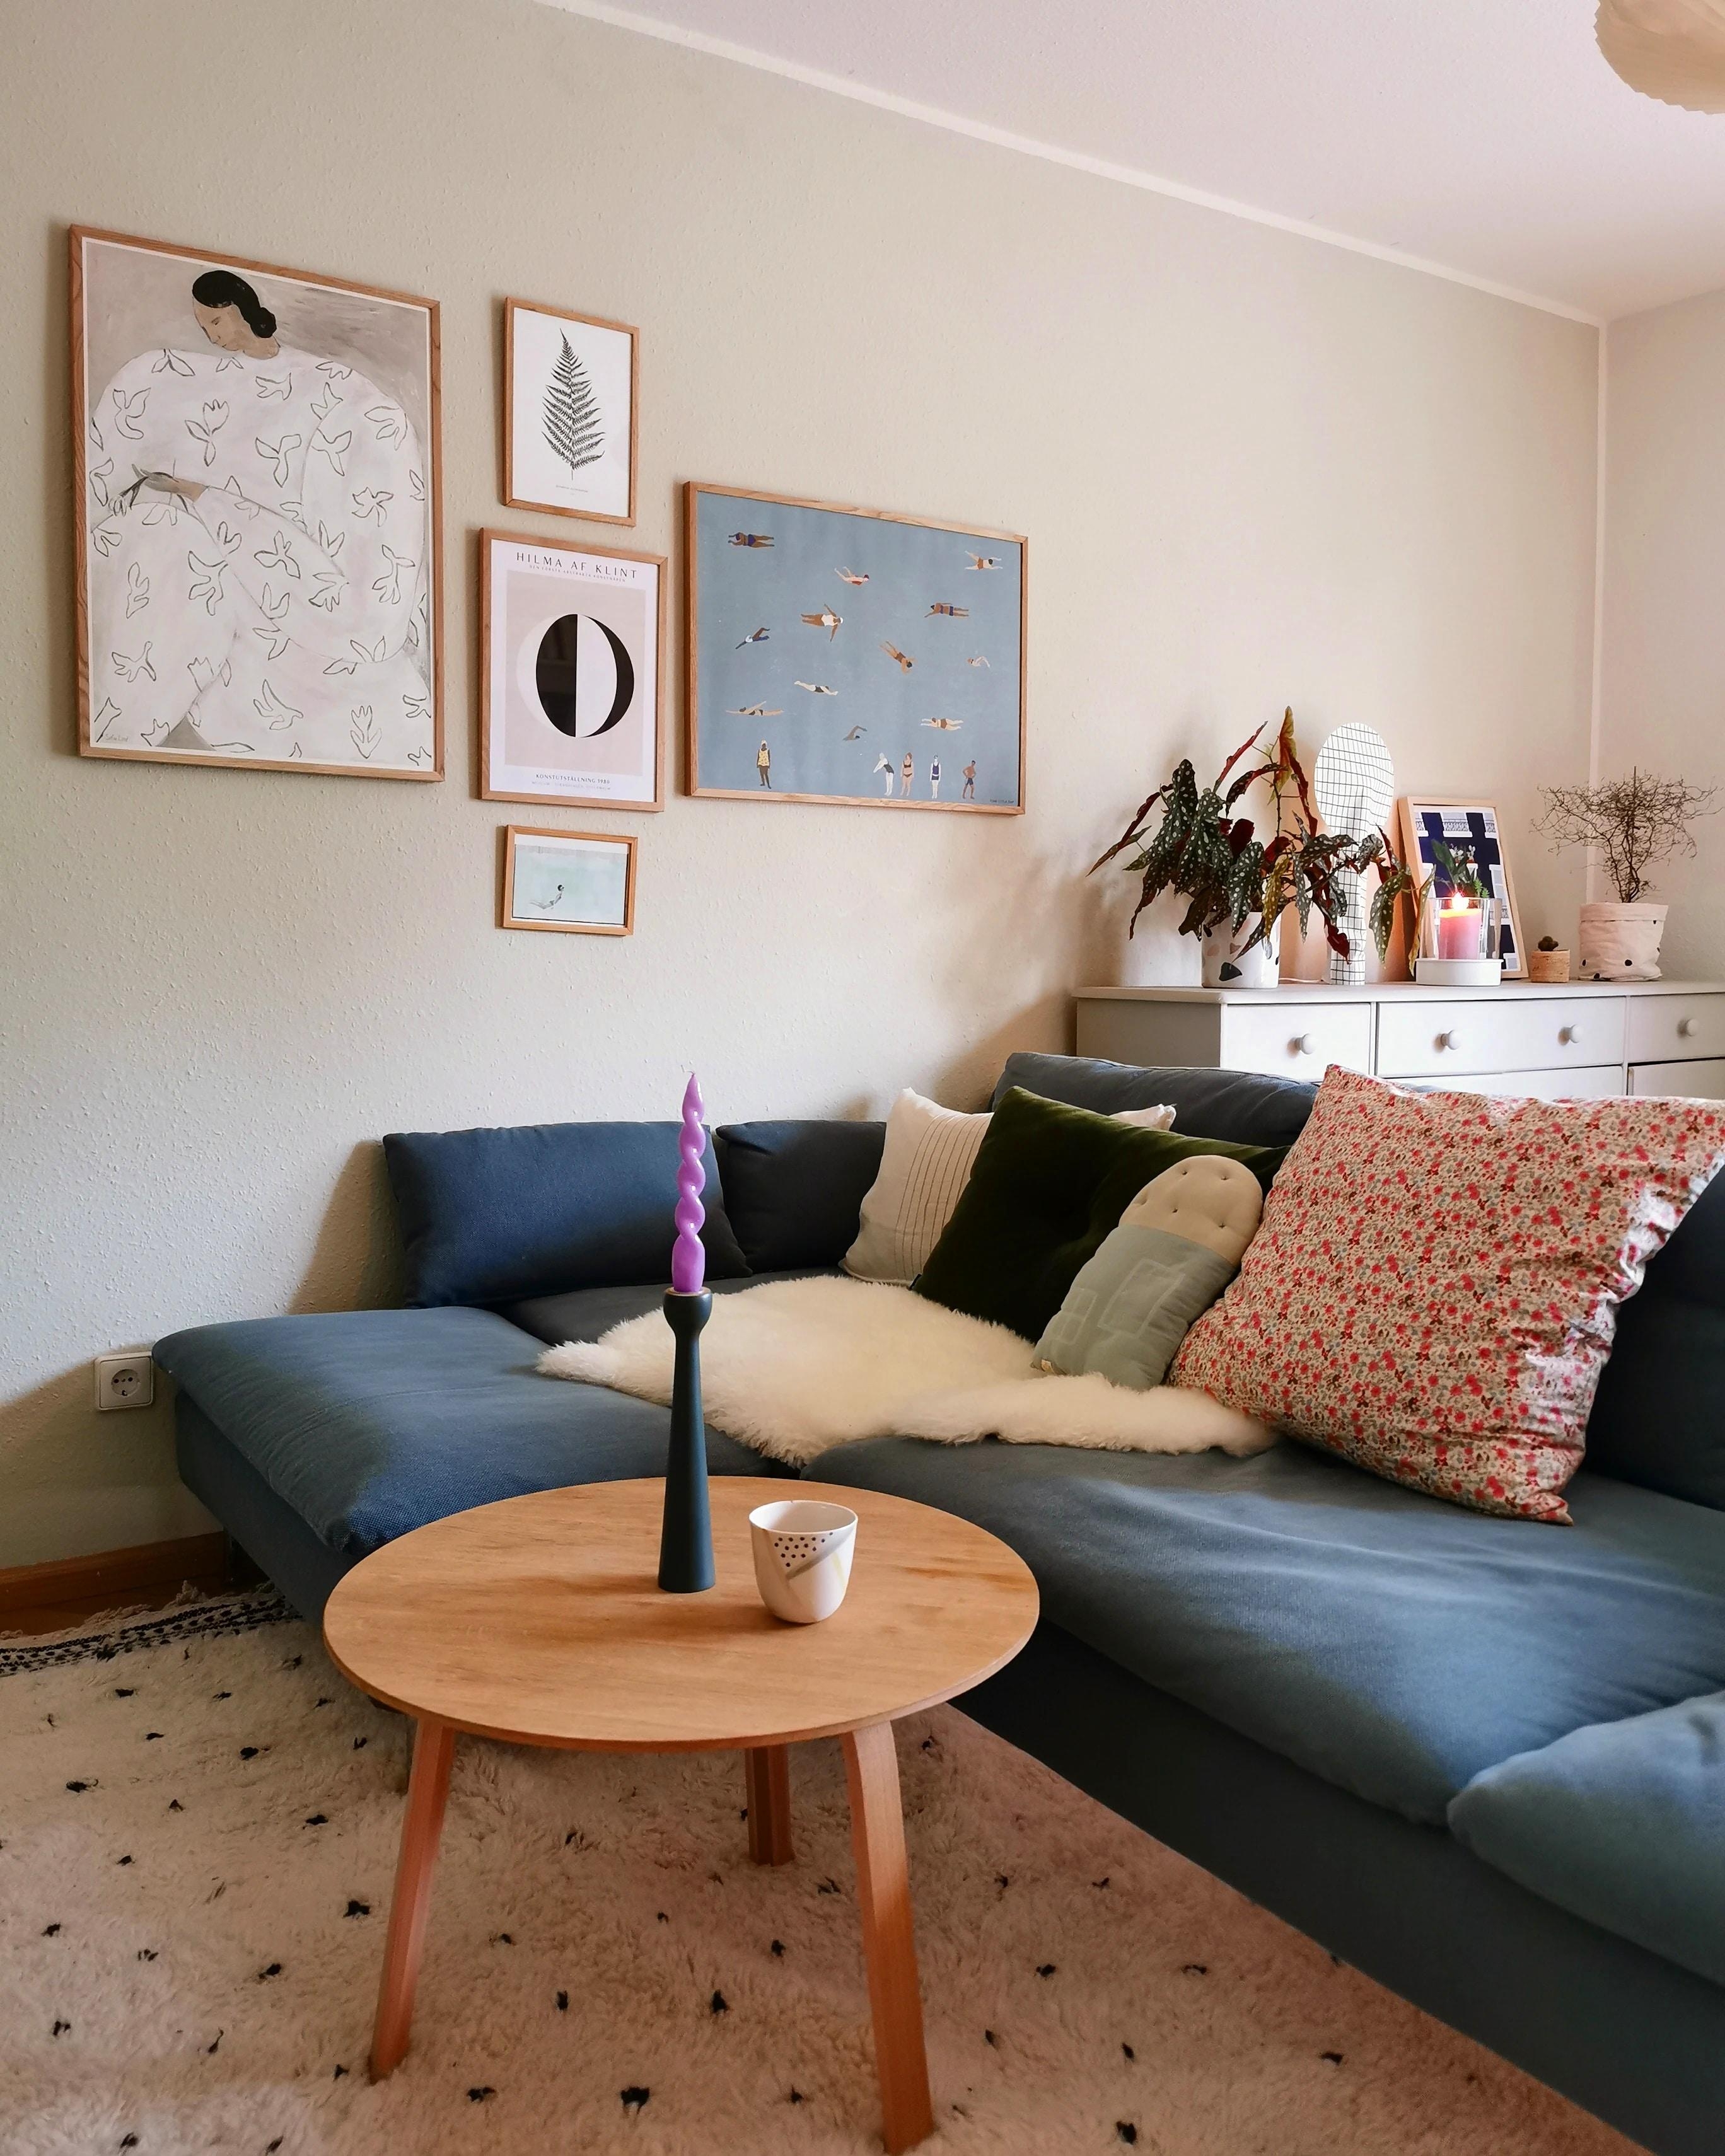 Gemütlichkeit im Wohnzimmer.
#home #livingroom #livingroominspo #livingroomview #livingroominterior #ikea #söderhamn 